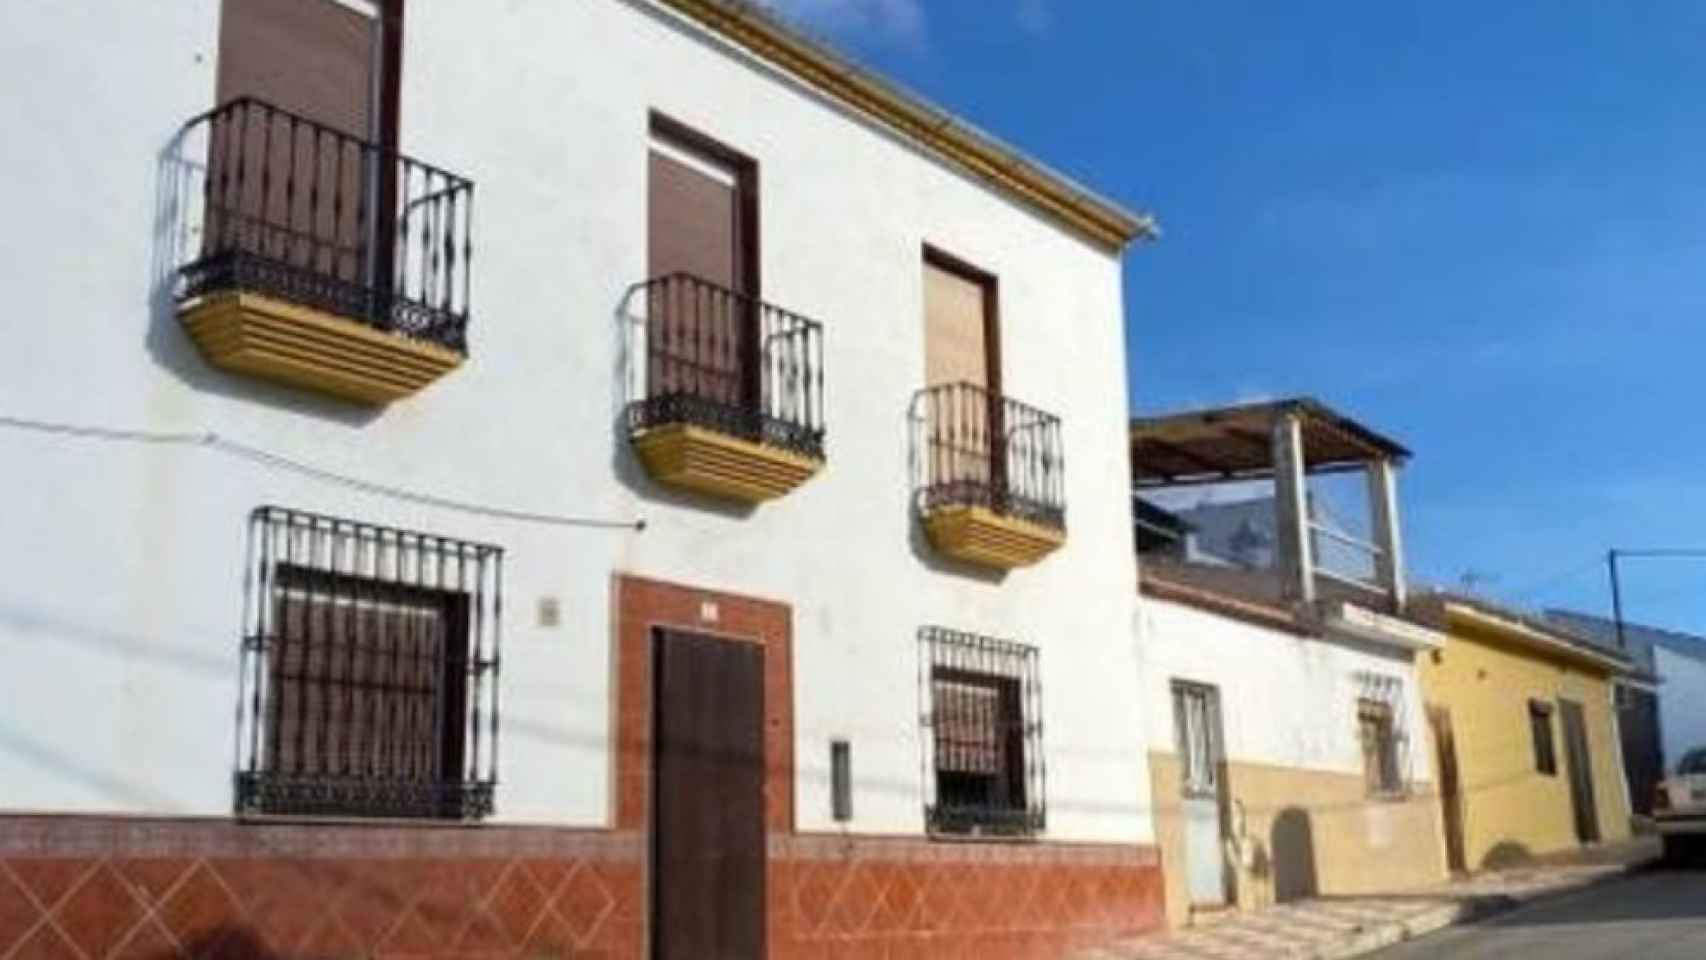 Casa a la venta en Humilladero por 53.000 euros.